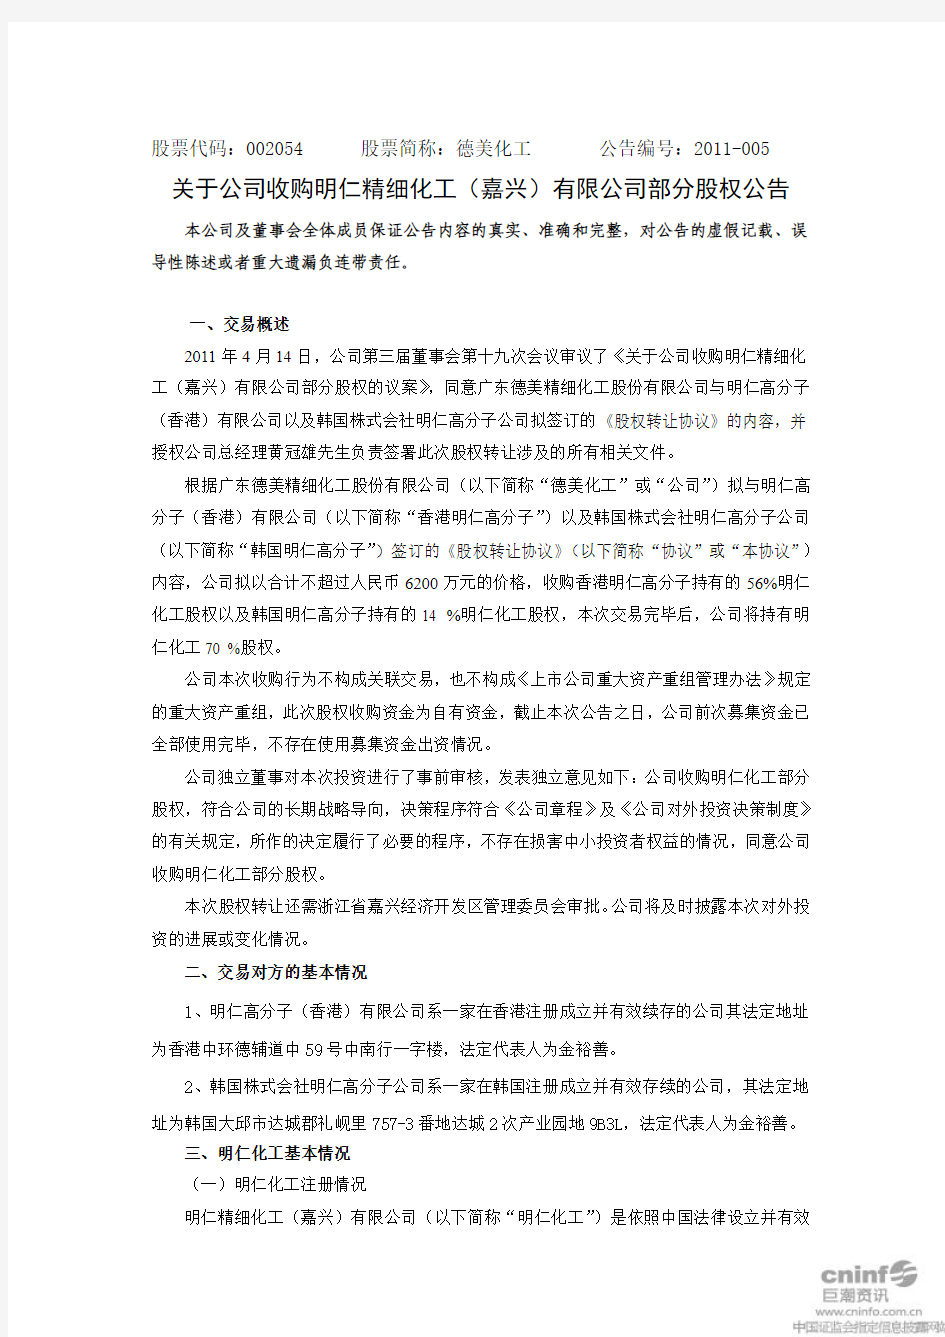 德美化工：关于公司收购明仁精细化工(嘉兴)有限公司部分股权公告
 2011-04-15